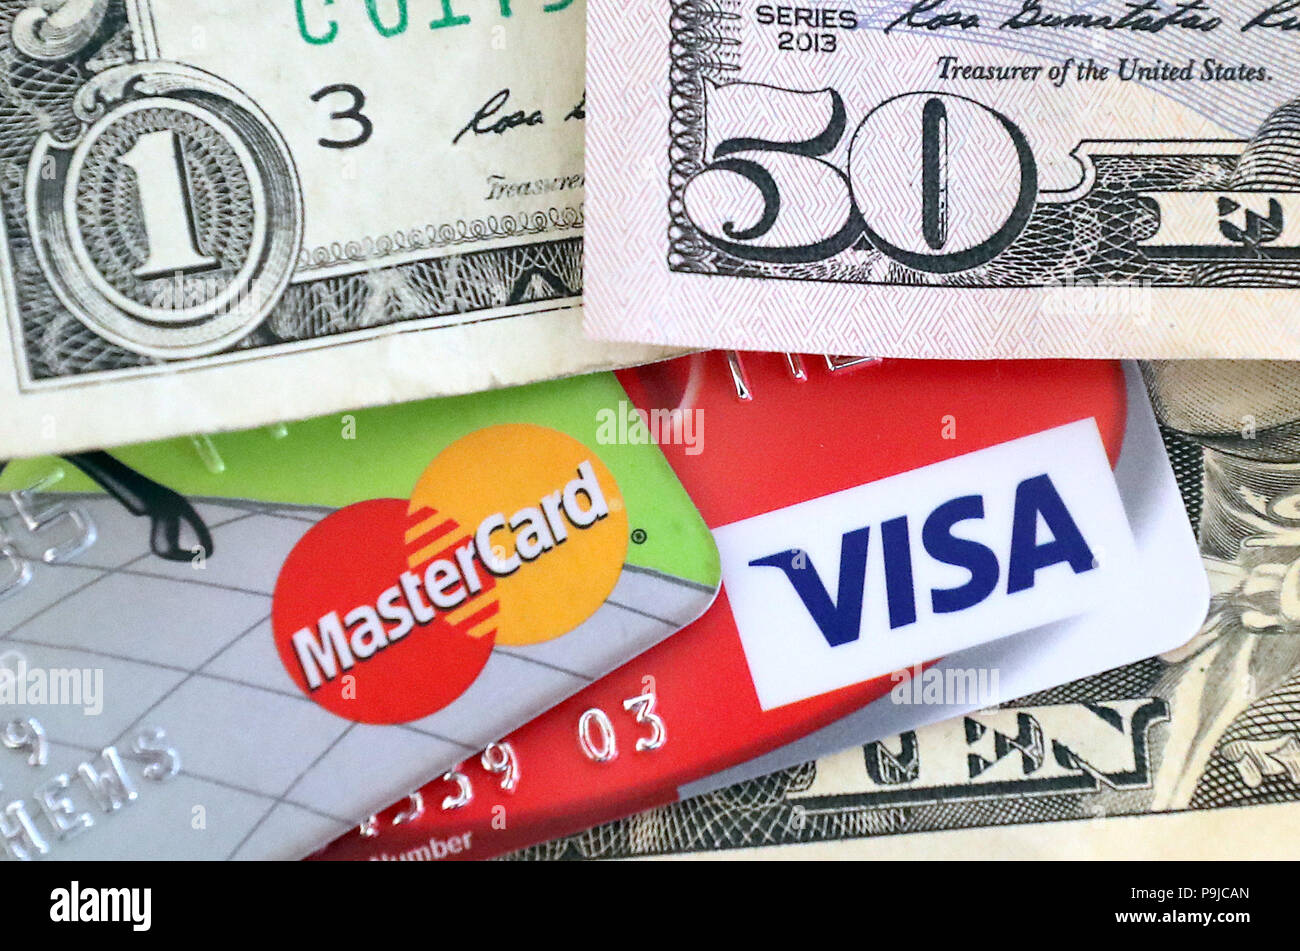 Una de crédito Mastercard y Visa debito rodeado de dólares EE.UU. Foto de stock